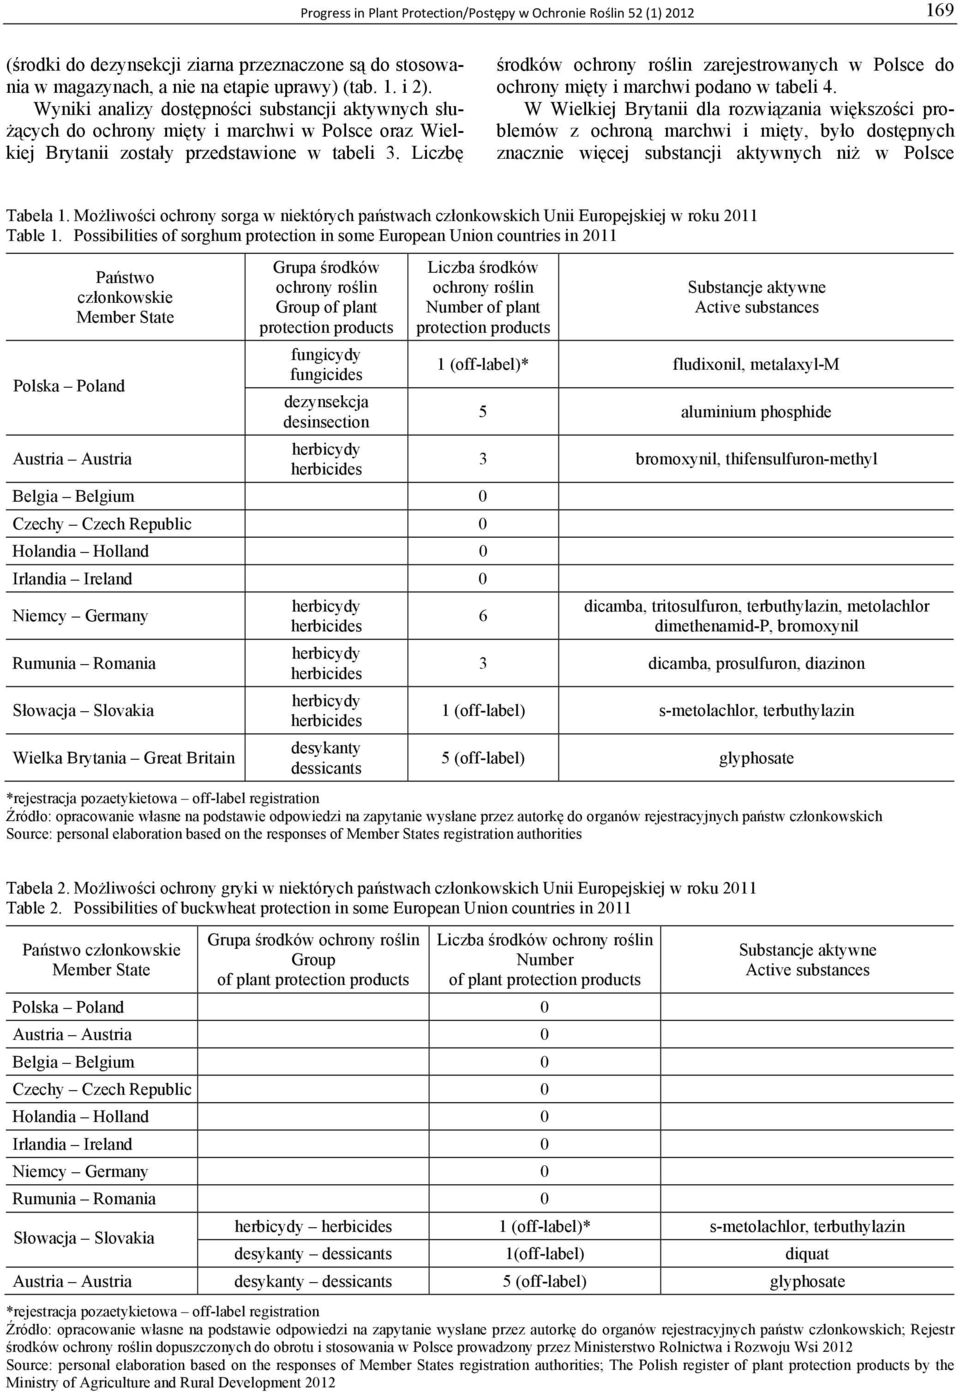 Liczbę środków ochrony roślin zarejestrowanych w Polsce do ochrony mięty i marchwi podano w tabeli 4.